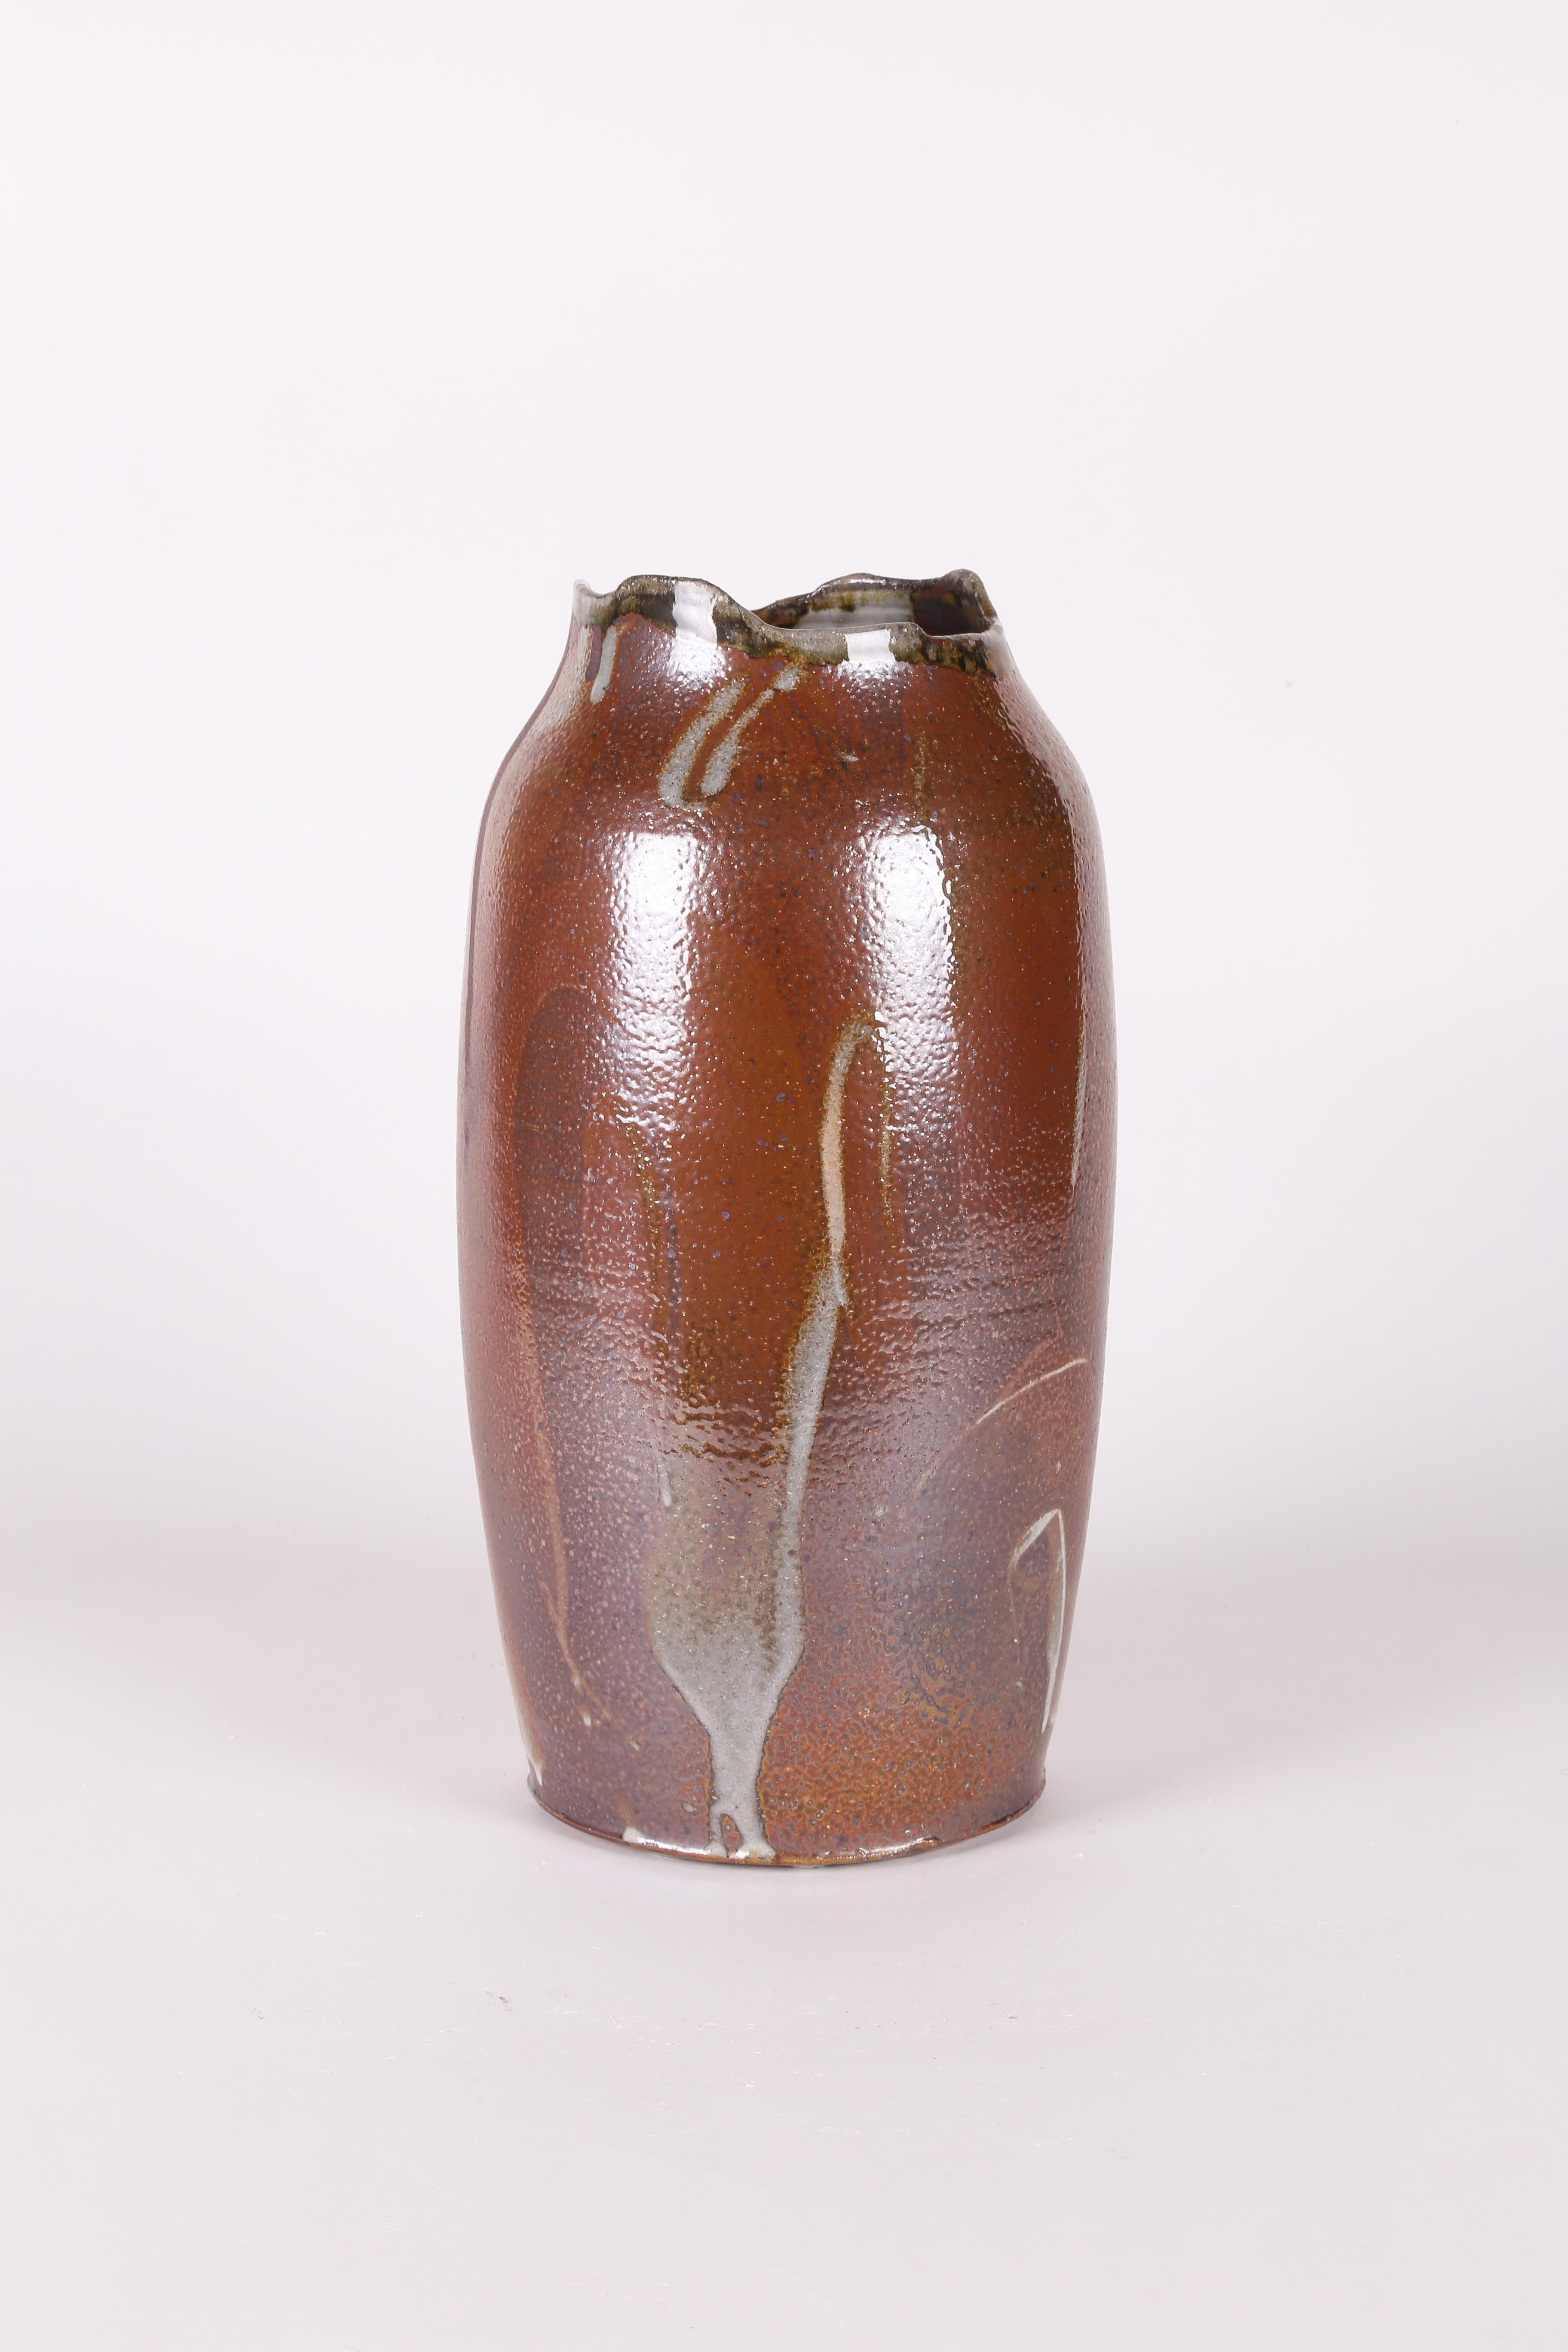 Vase aus handgedrehtem und im Holzofen gebranntem Steinzeug mit einer reich gesättigten ockerroten Glasur mit ausdrucksstarken, gestischen Schlieren in tiefbraunen und rostfarbenen Erdtönen. Dieses einzigartige Gefäß wurde im Studio der bekannten